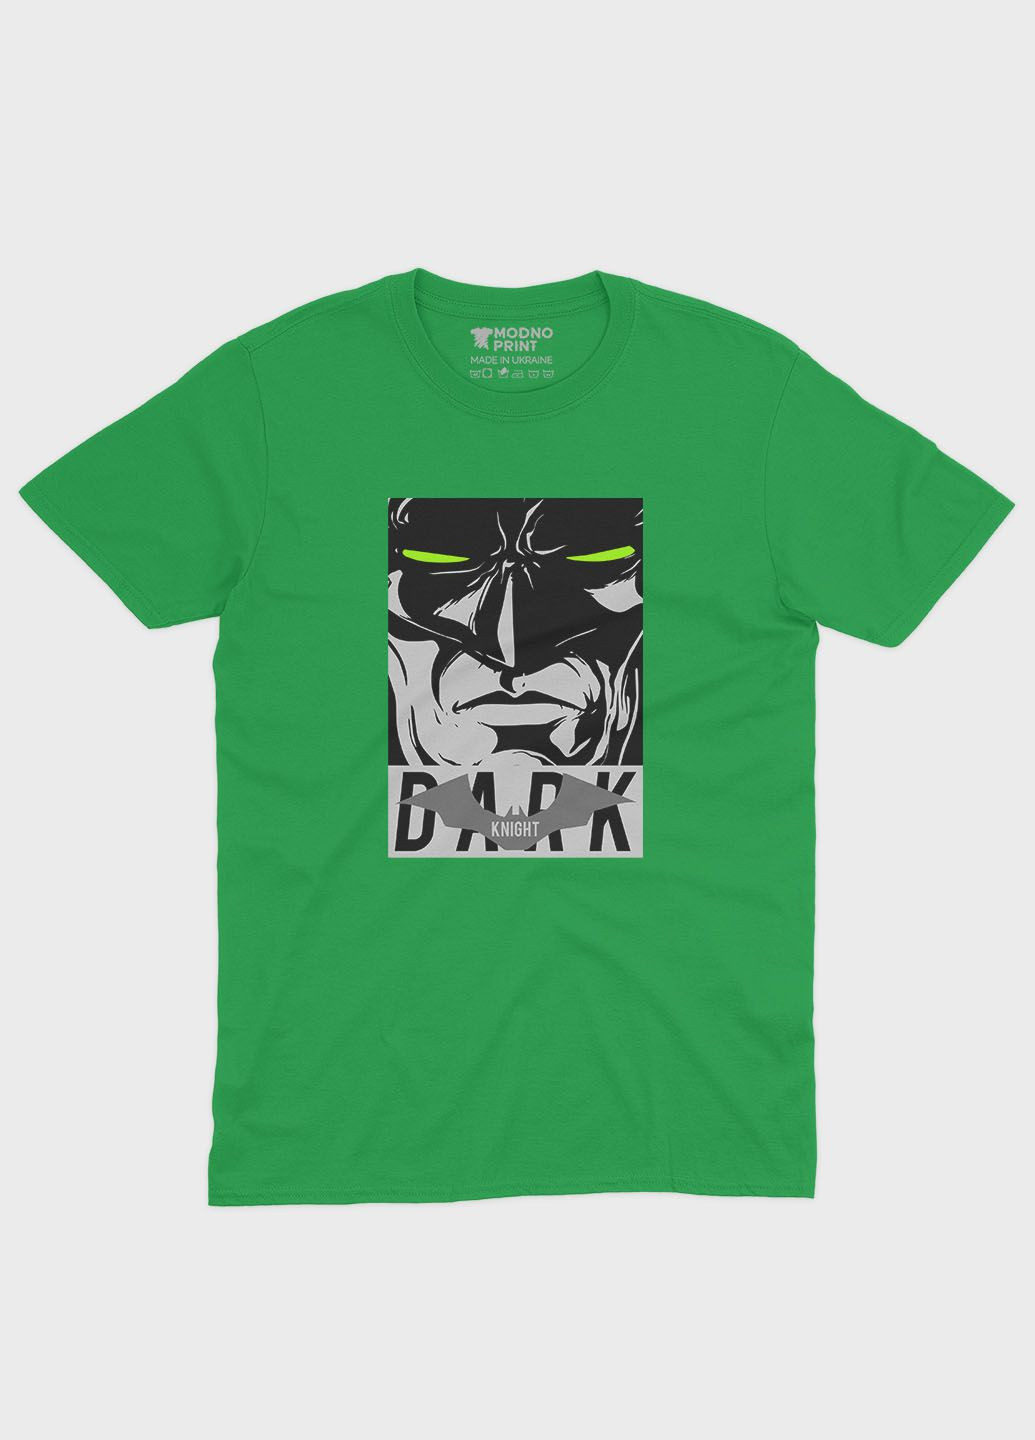 Зеленая демисезонная футболка для девочки с принтом супергероя - бэтмен (ts001-1-keg-006-003-029-g) Modno